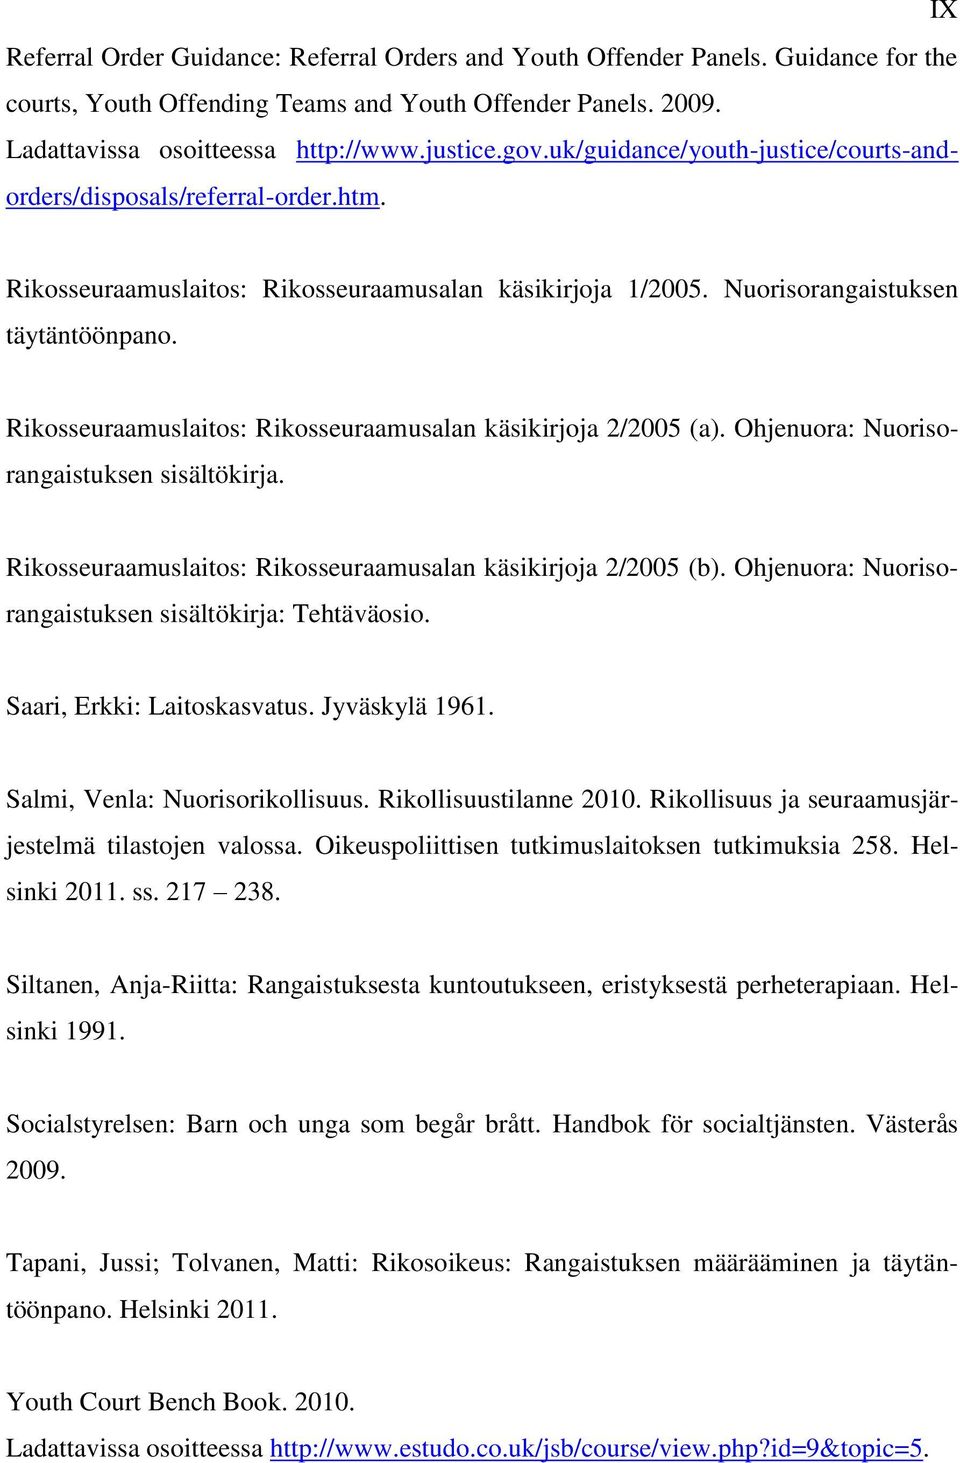 Rikosseuraamuslaitos: Rikosseuraamusalan käsikirjoja 2/2005 (a). Ohjenuora: Nuorisorangaistuksen sisältökirja. Rikosseuraamuslaitos: Rikosseuraamusalan käsikirjoja 2/2005 (b).